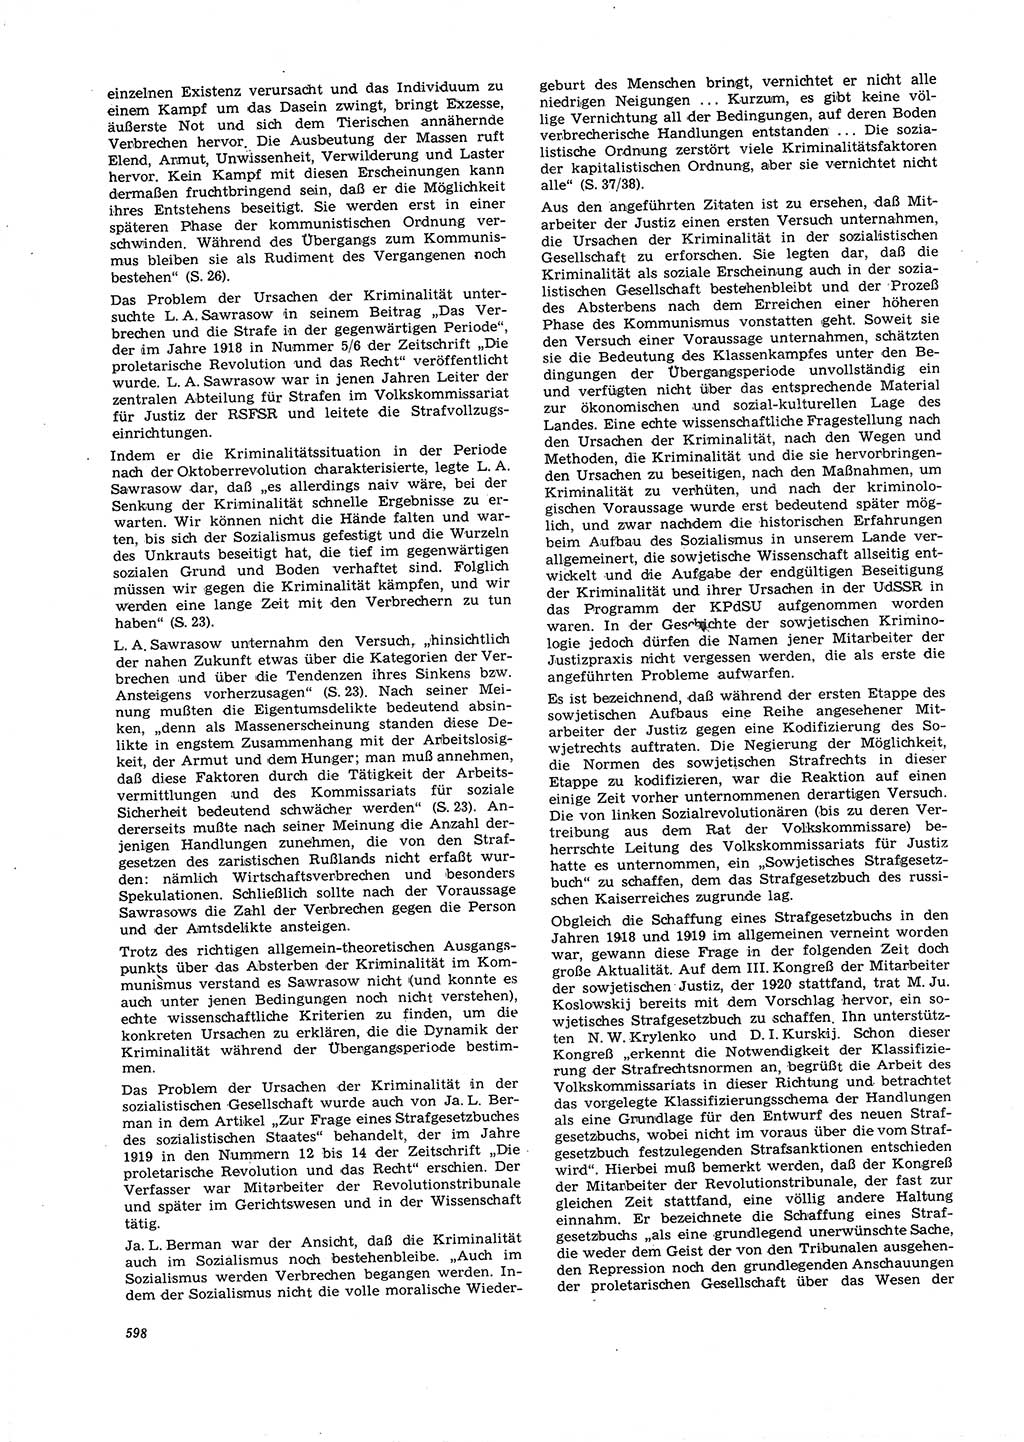 Neue Justiz (NJ), Zeitschrift für Recht und Rechtswissenschaft [Deutsche Demokratische Republik (DDR)], 21. Jahrgang 1967, Seite 598 (NJ DDR 1967, S. 598)